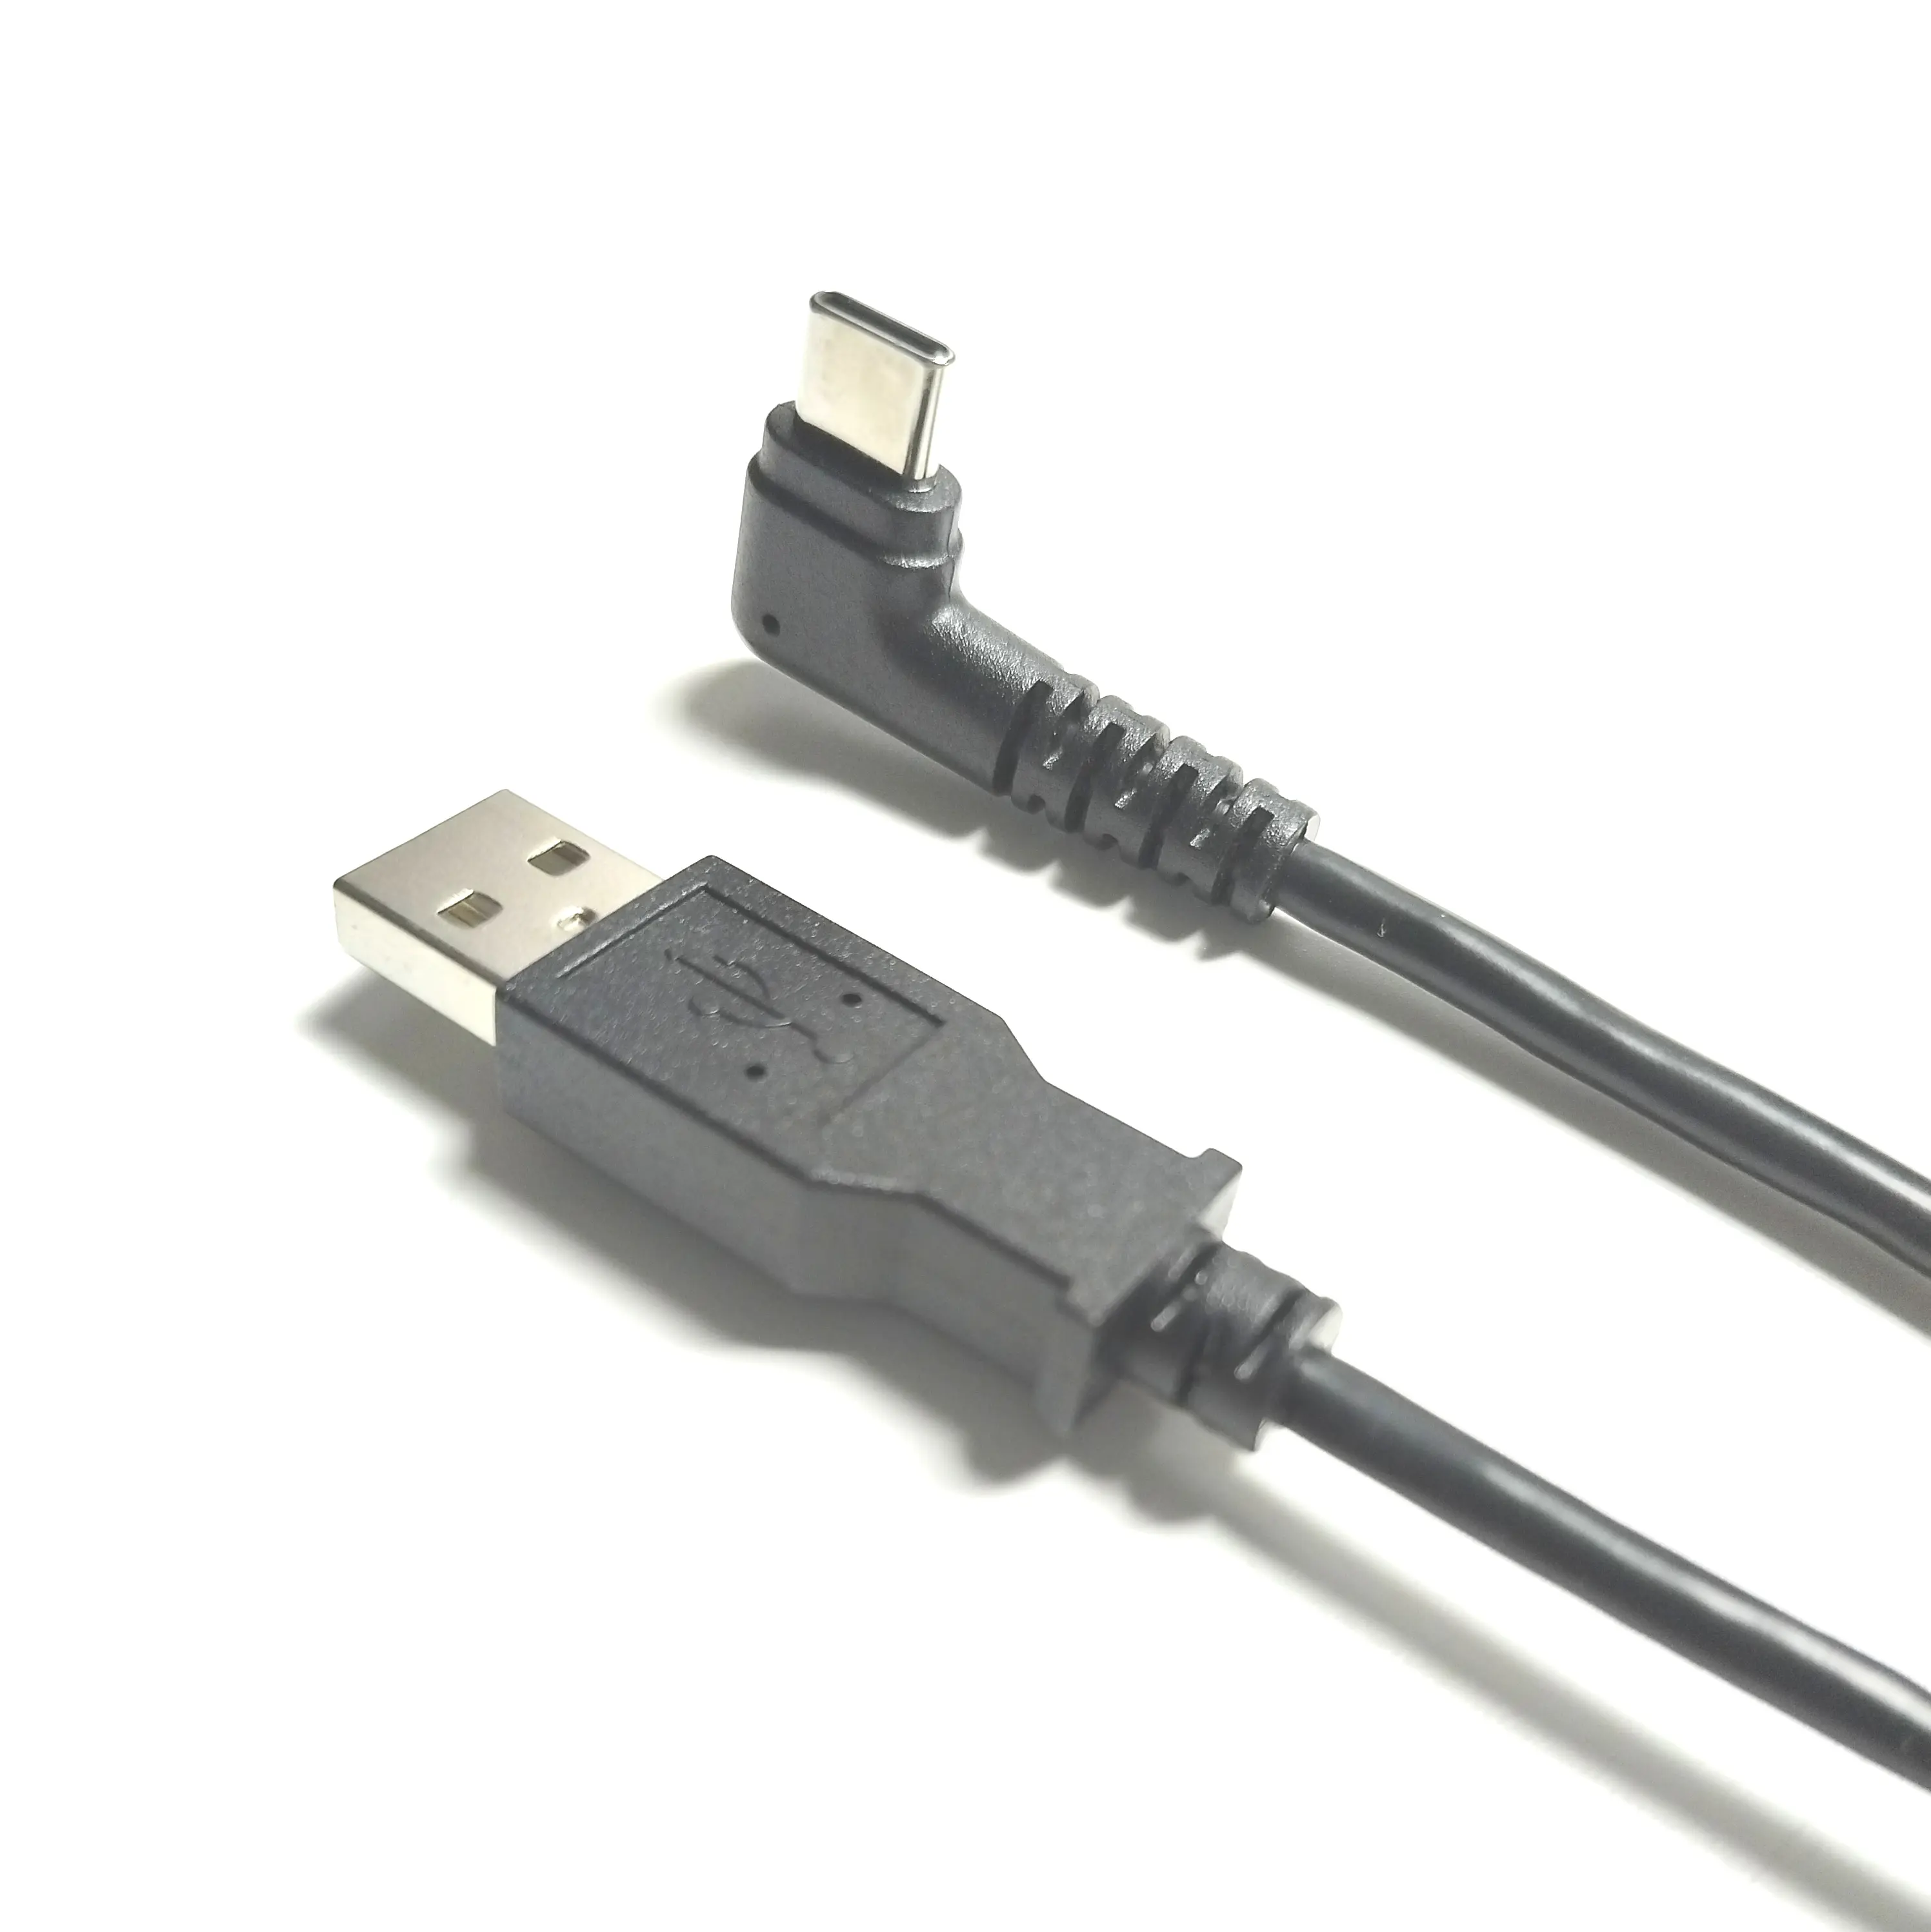 Kabel USB tipe-c sudut kanan 1.5m, kabel USB tipe-c VW-1 tahan api hitam, USB-AM PVC tembaga murni USB 2.0, kabel Data tipe-c, pelindung kepang